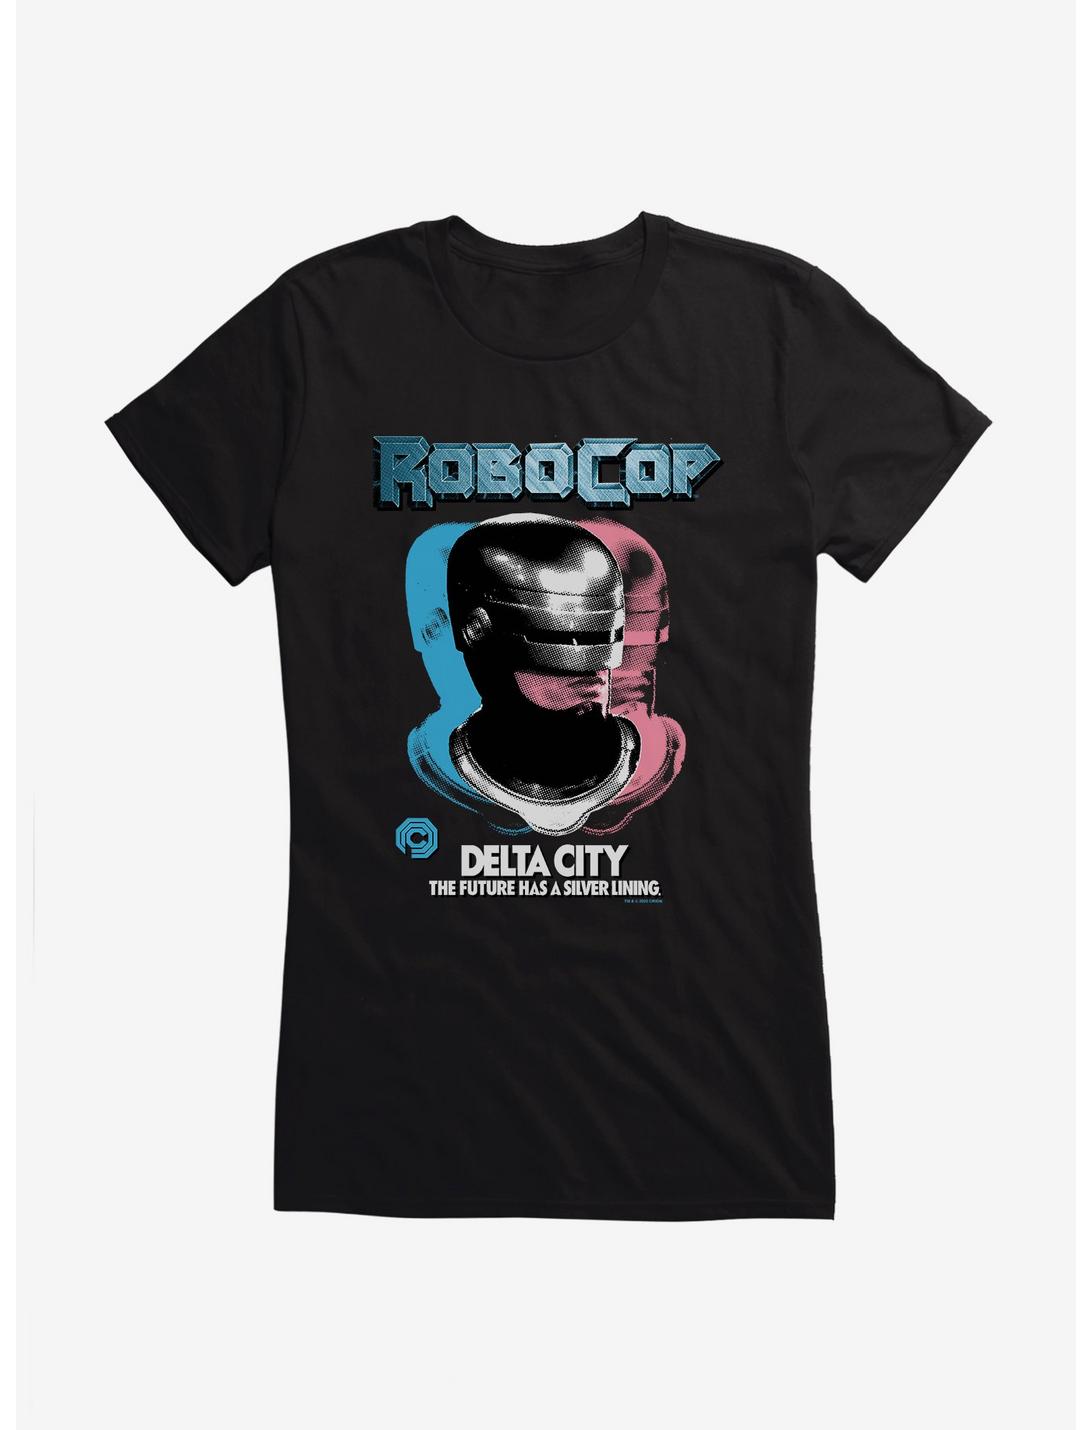 Robocop Delta City: The Future Has A Silver Lining Girls T-Shirt, BLACK, hi-res